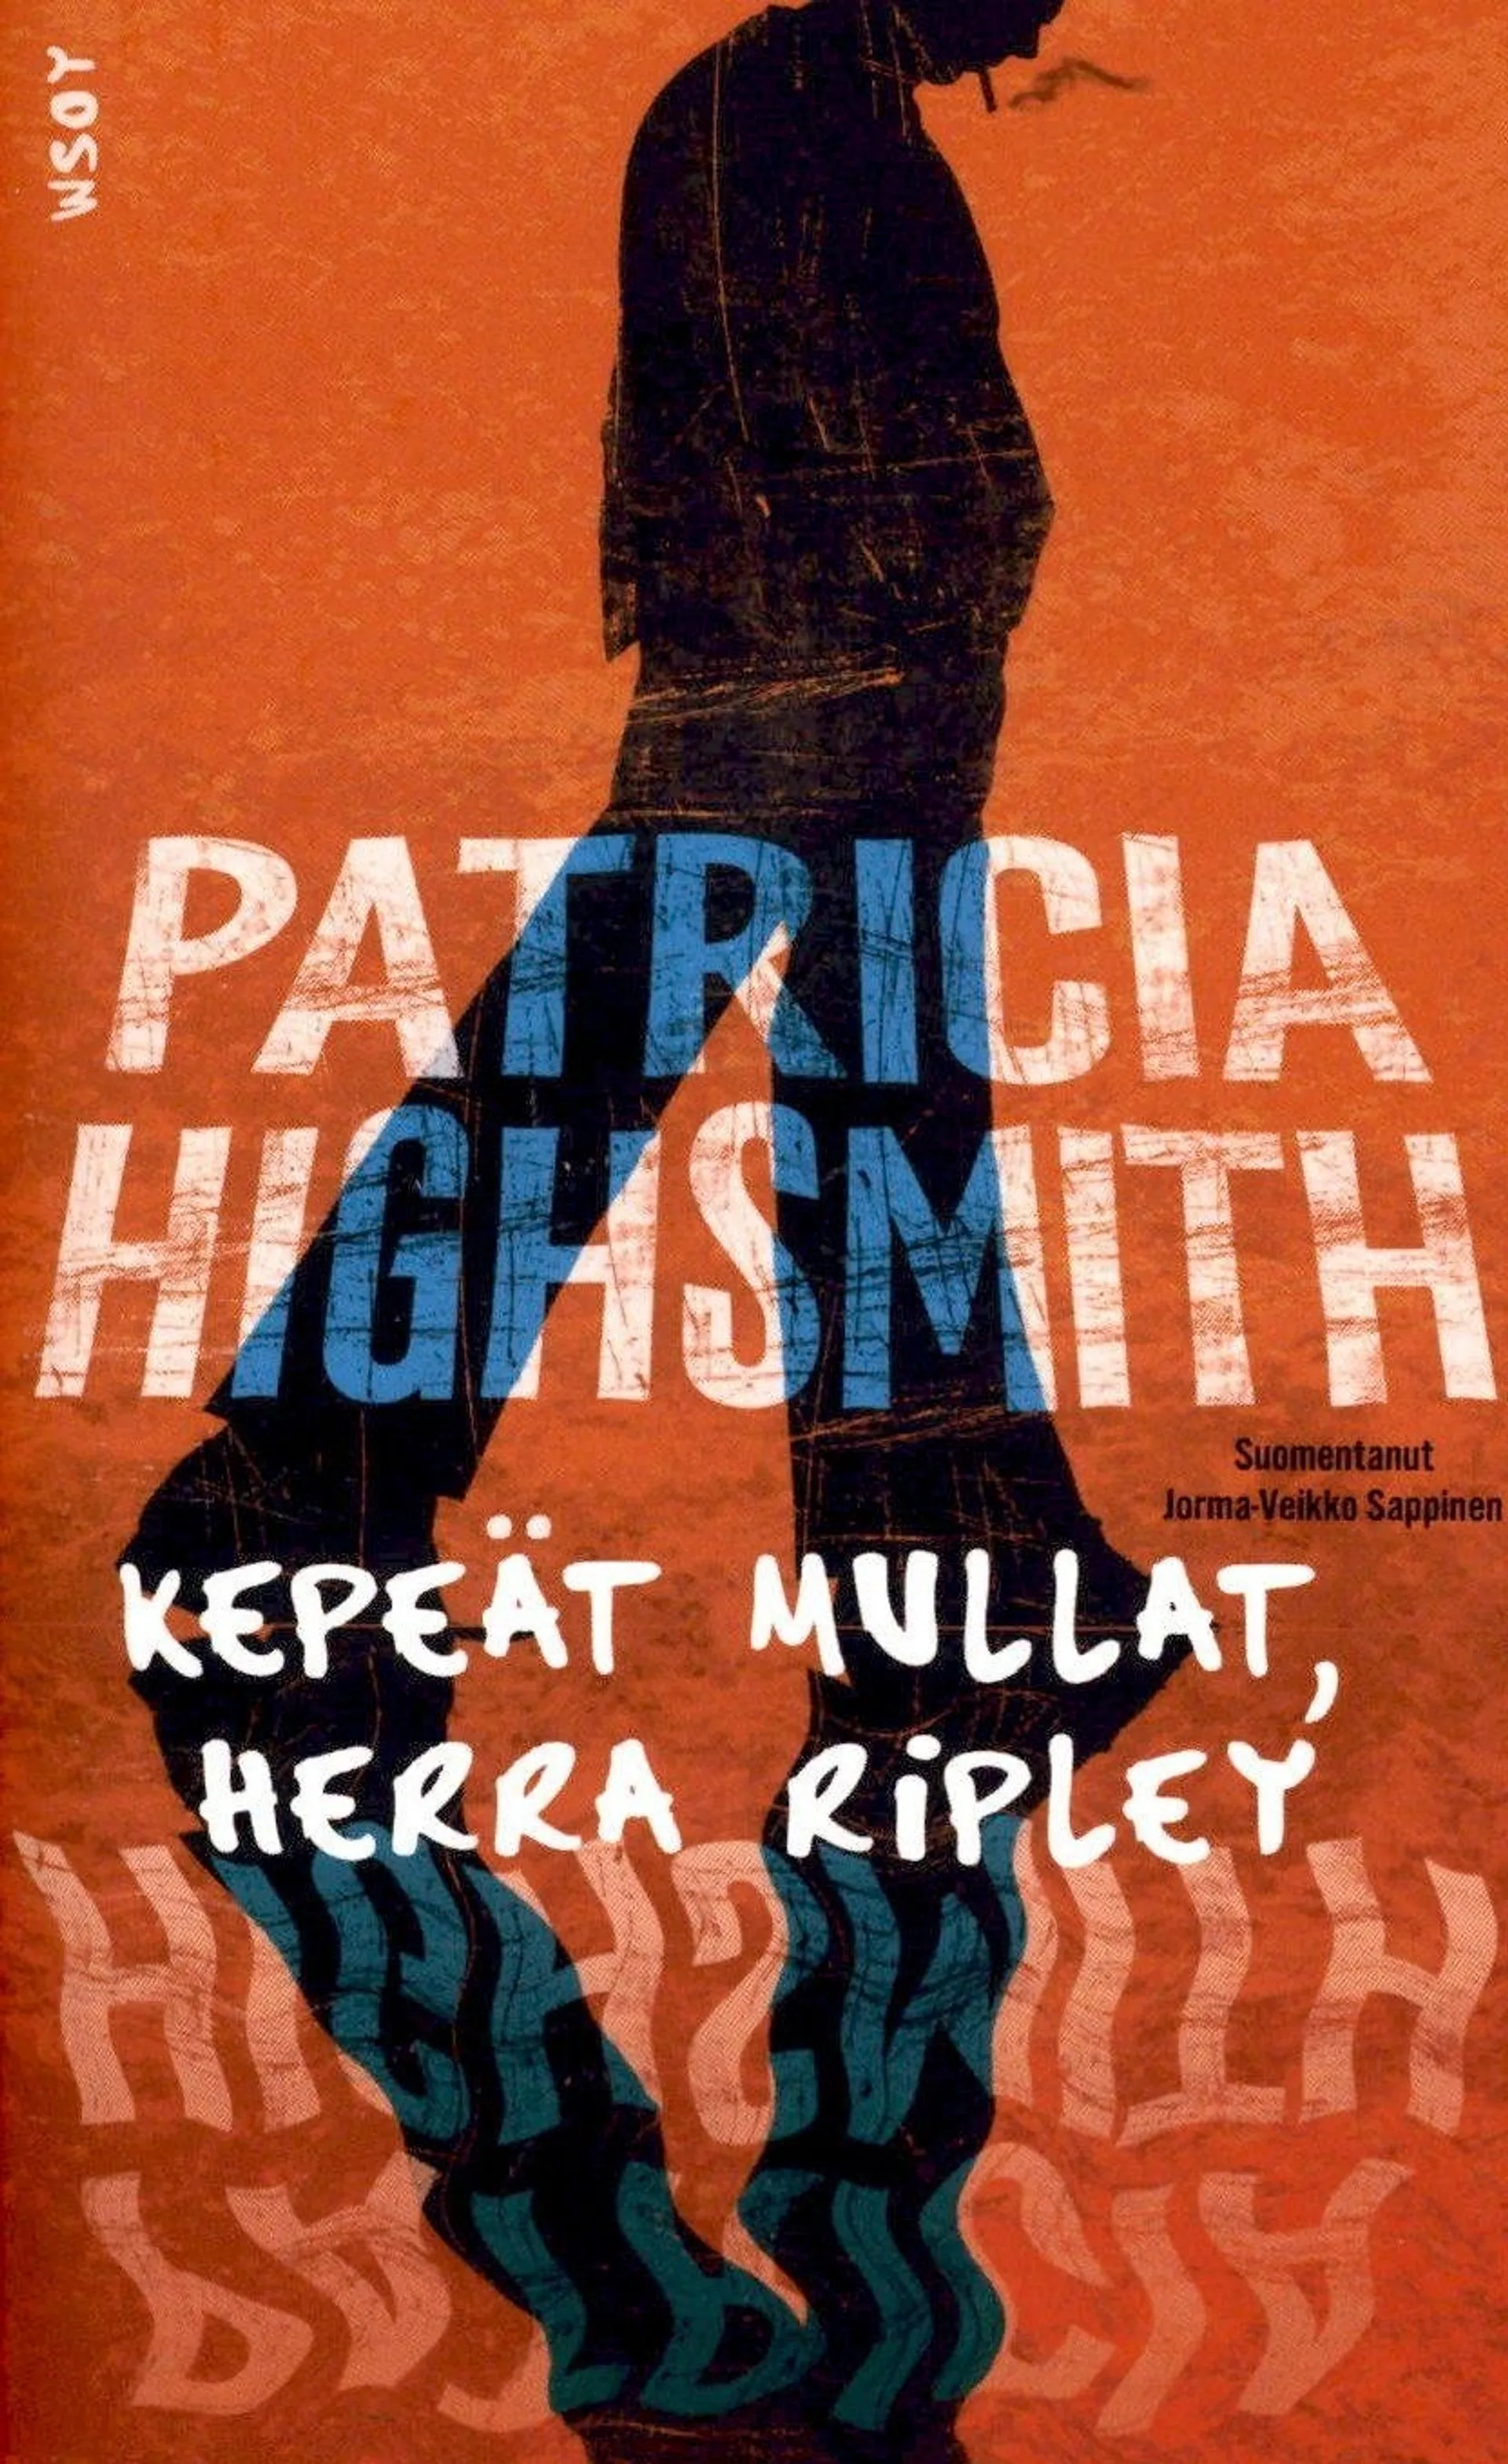 Highsmith, Patricia: Kepeät mullat, herr